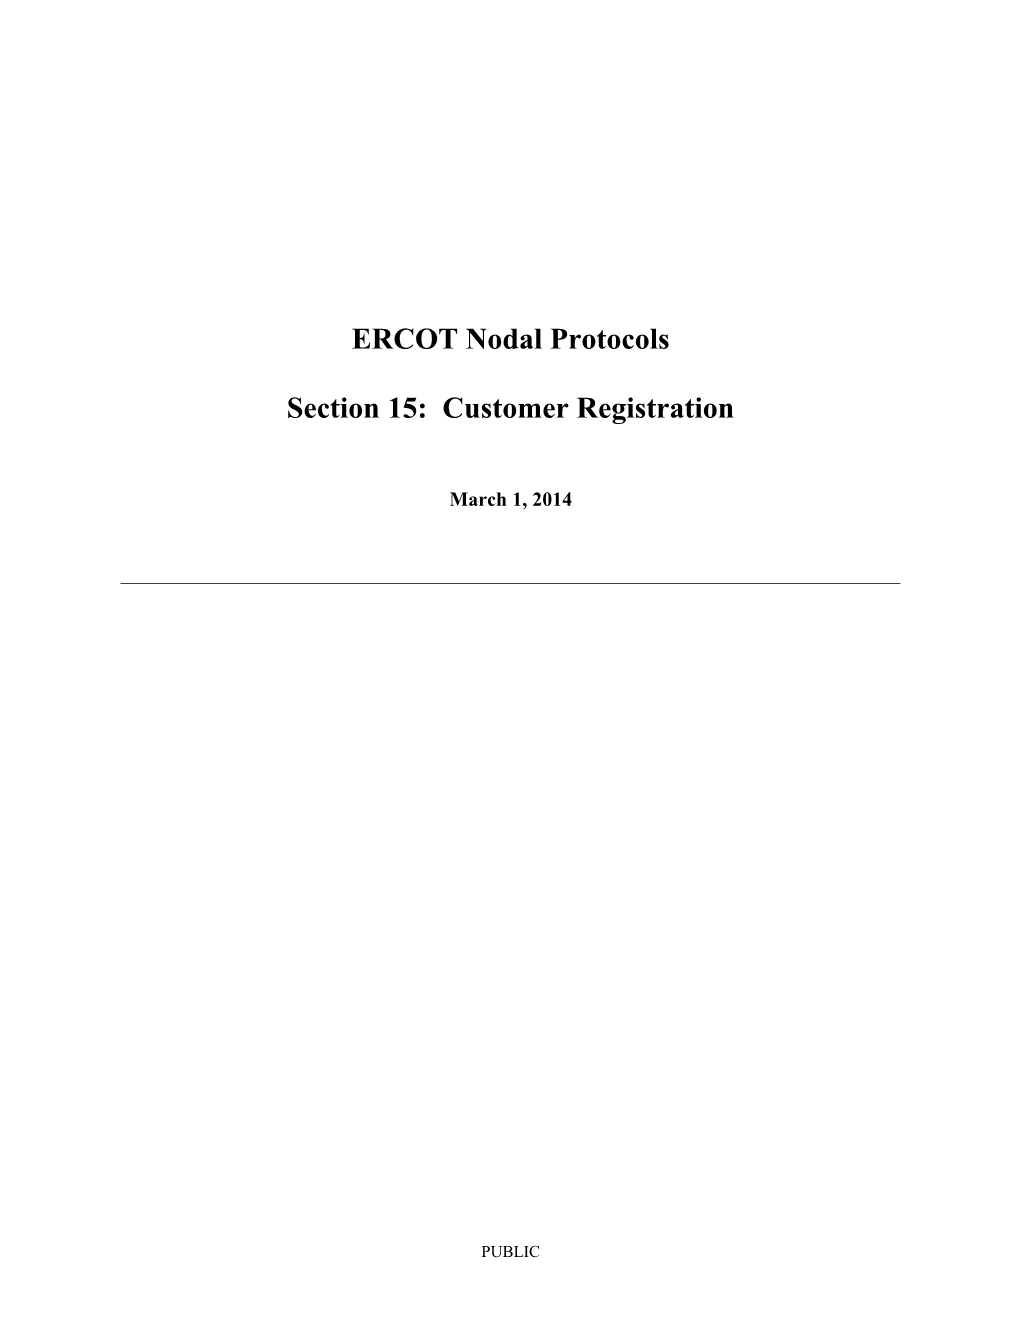 ERCOT Nodal Protocols s3